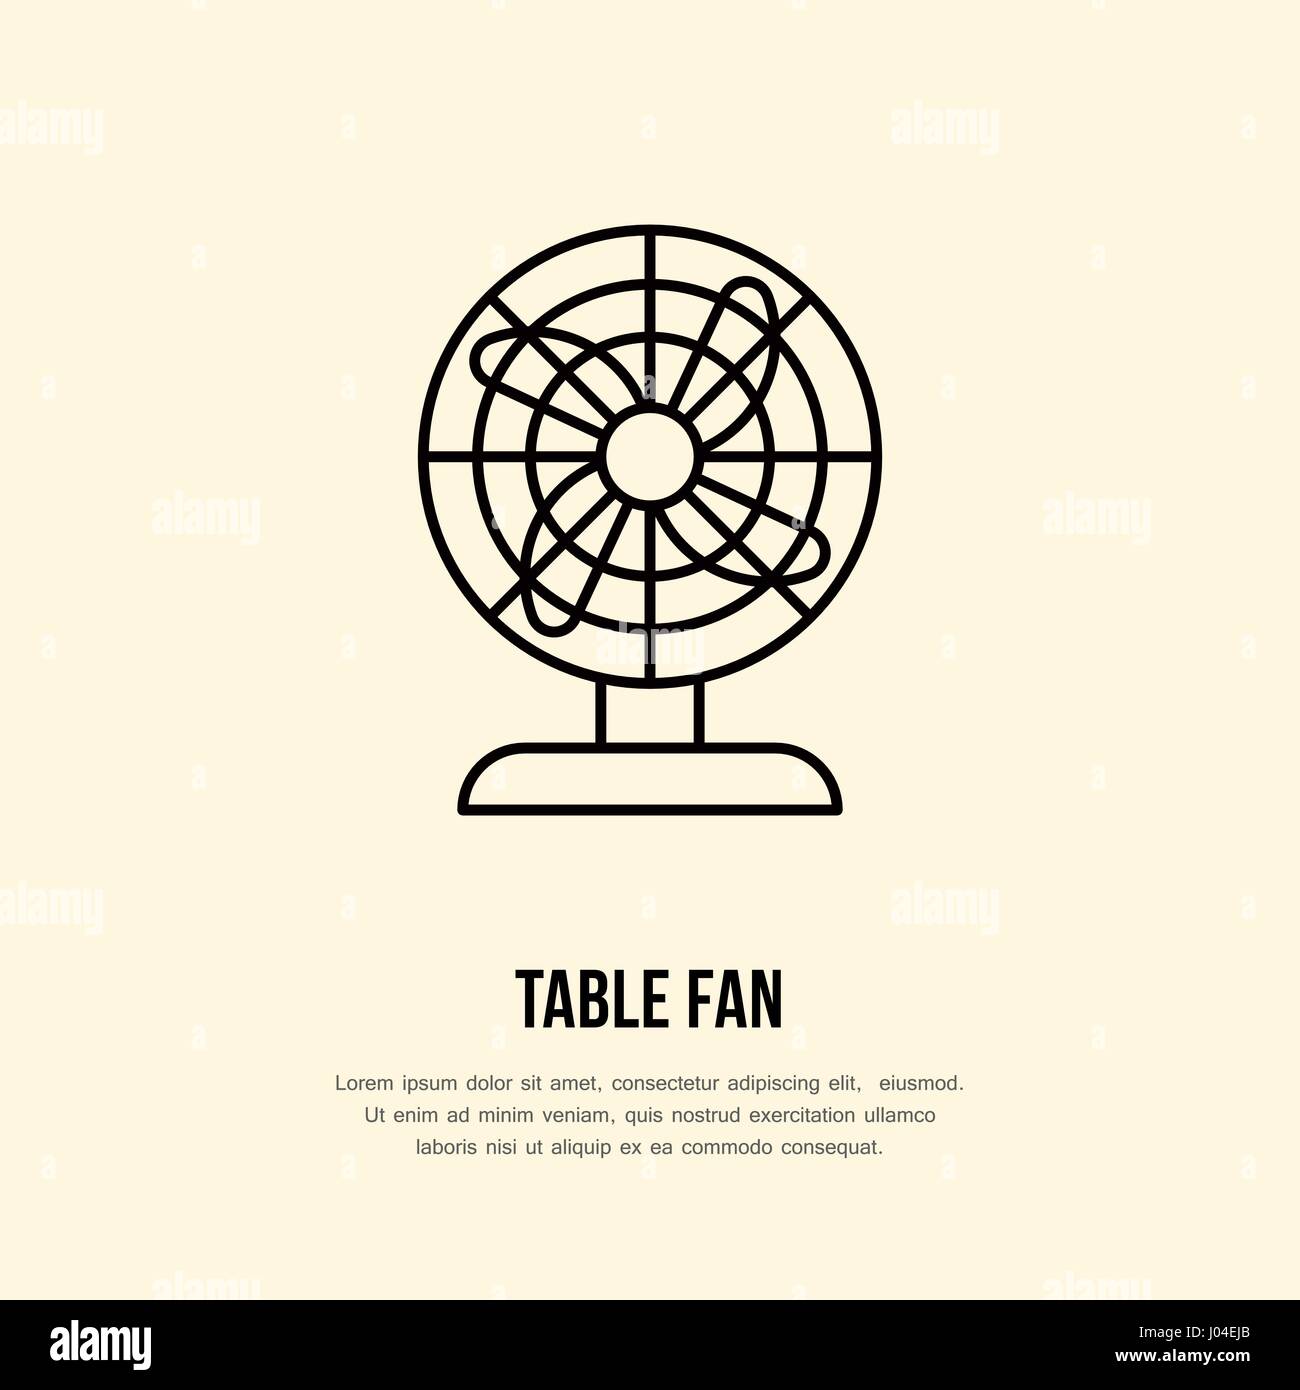 Domestico linea alimentazione logo. Segno piatto di fan table. Logotipo per elettrodomestici store, negozio di ventilazione Illustrazione Vettoriale